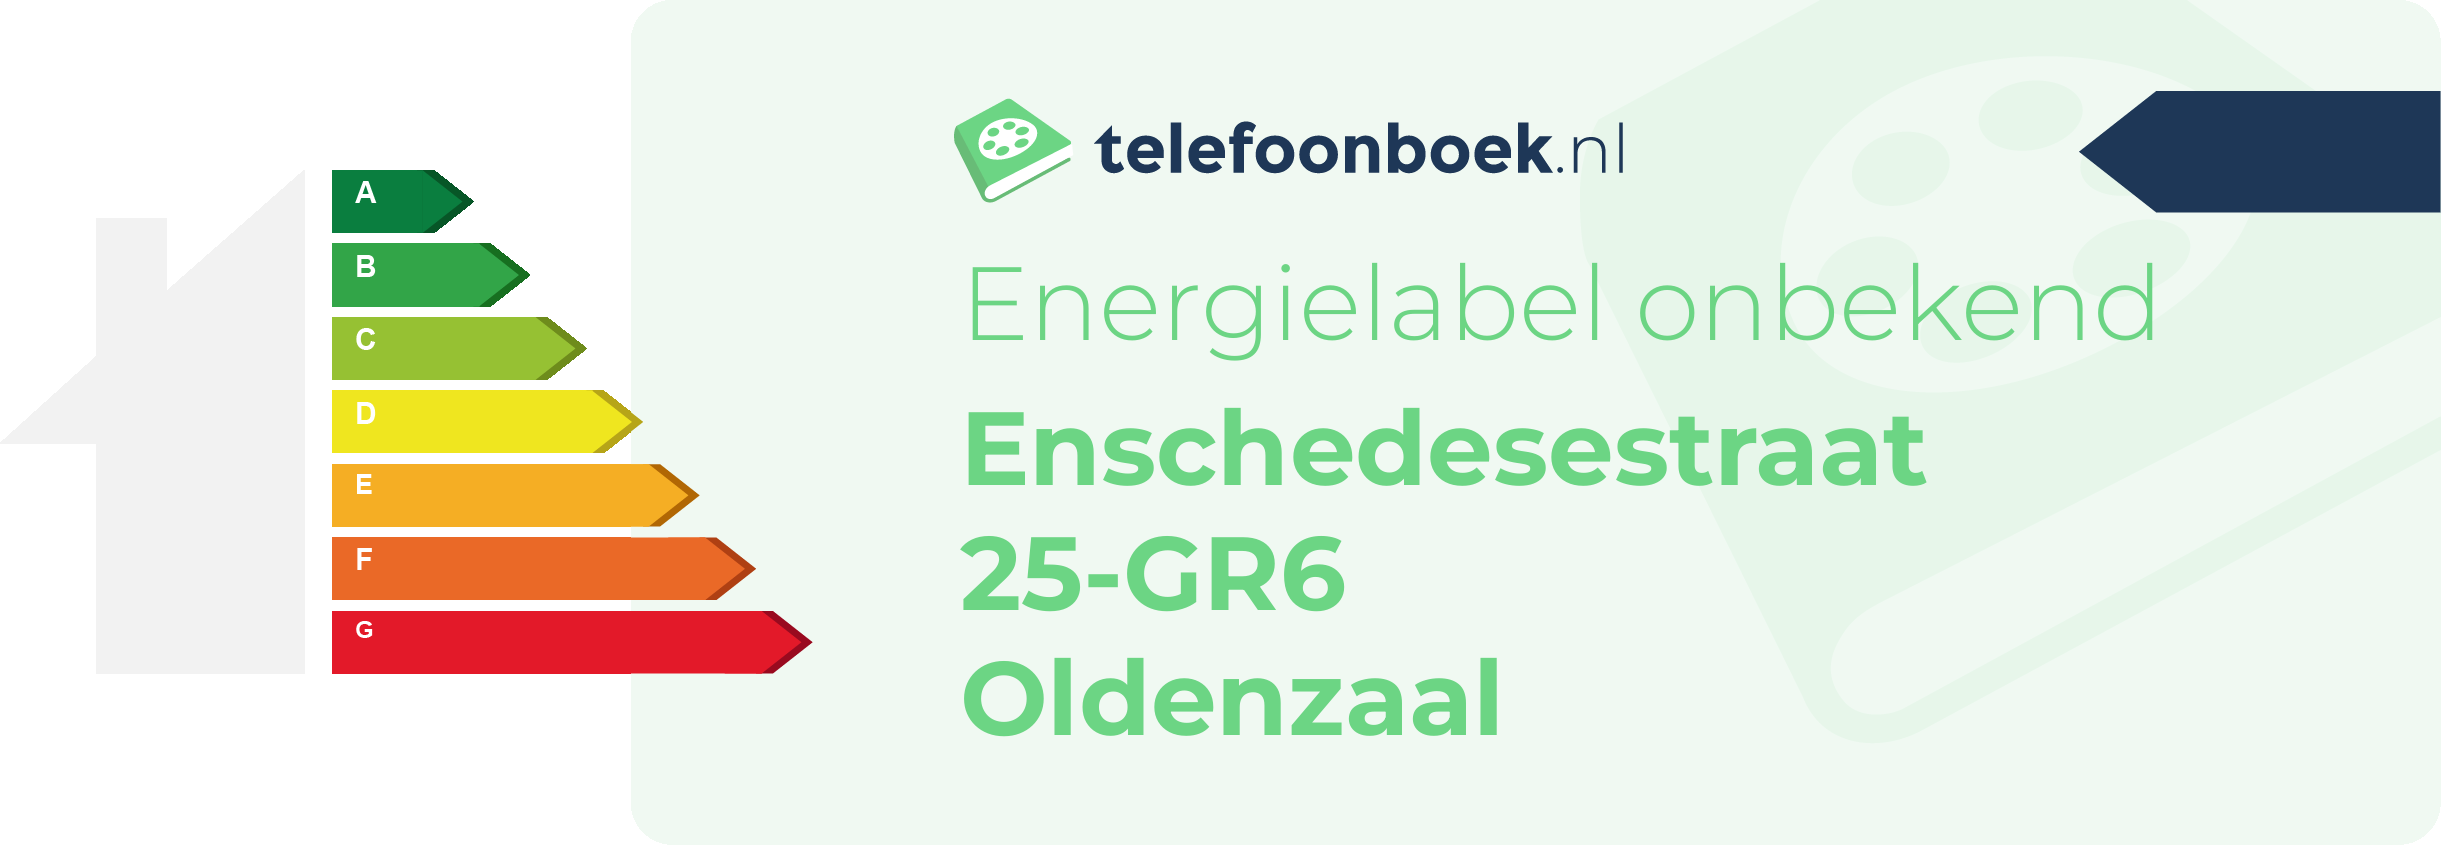 Energielabel Enschedesestraat 25-GR6 Oldenzaal